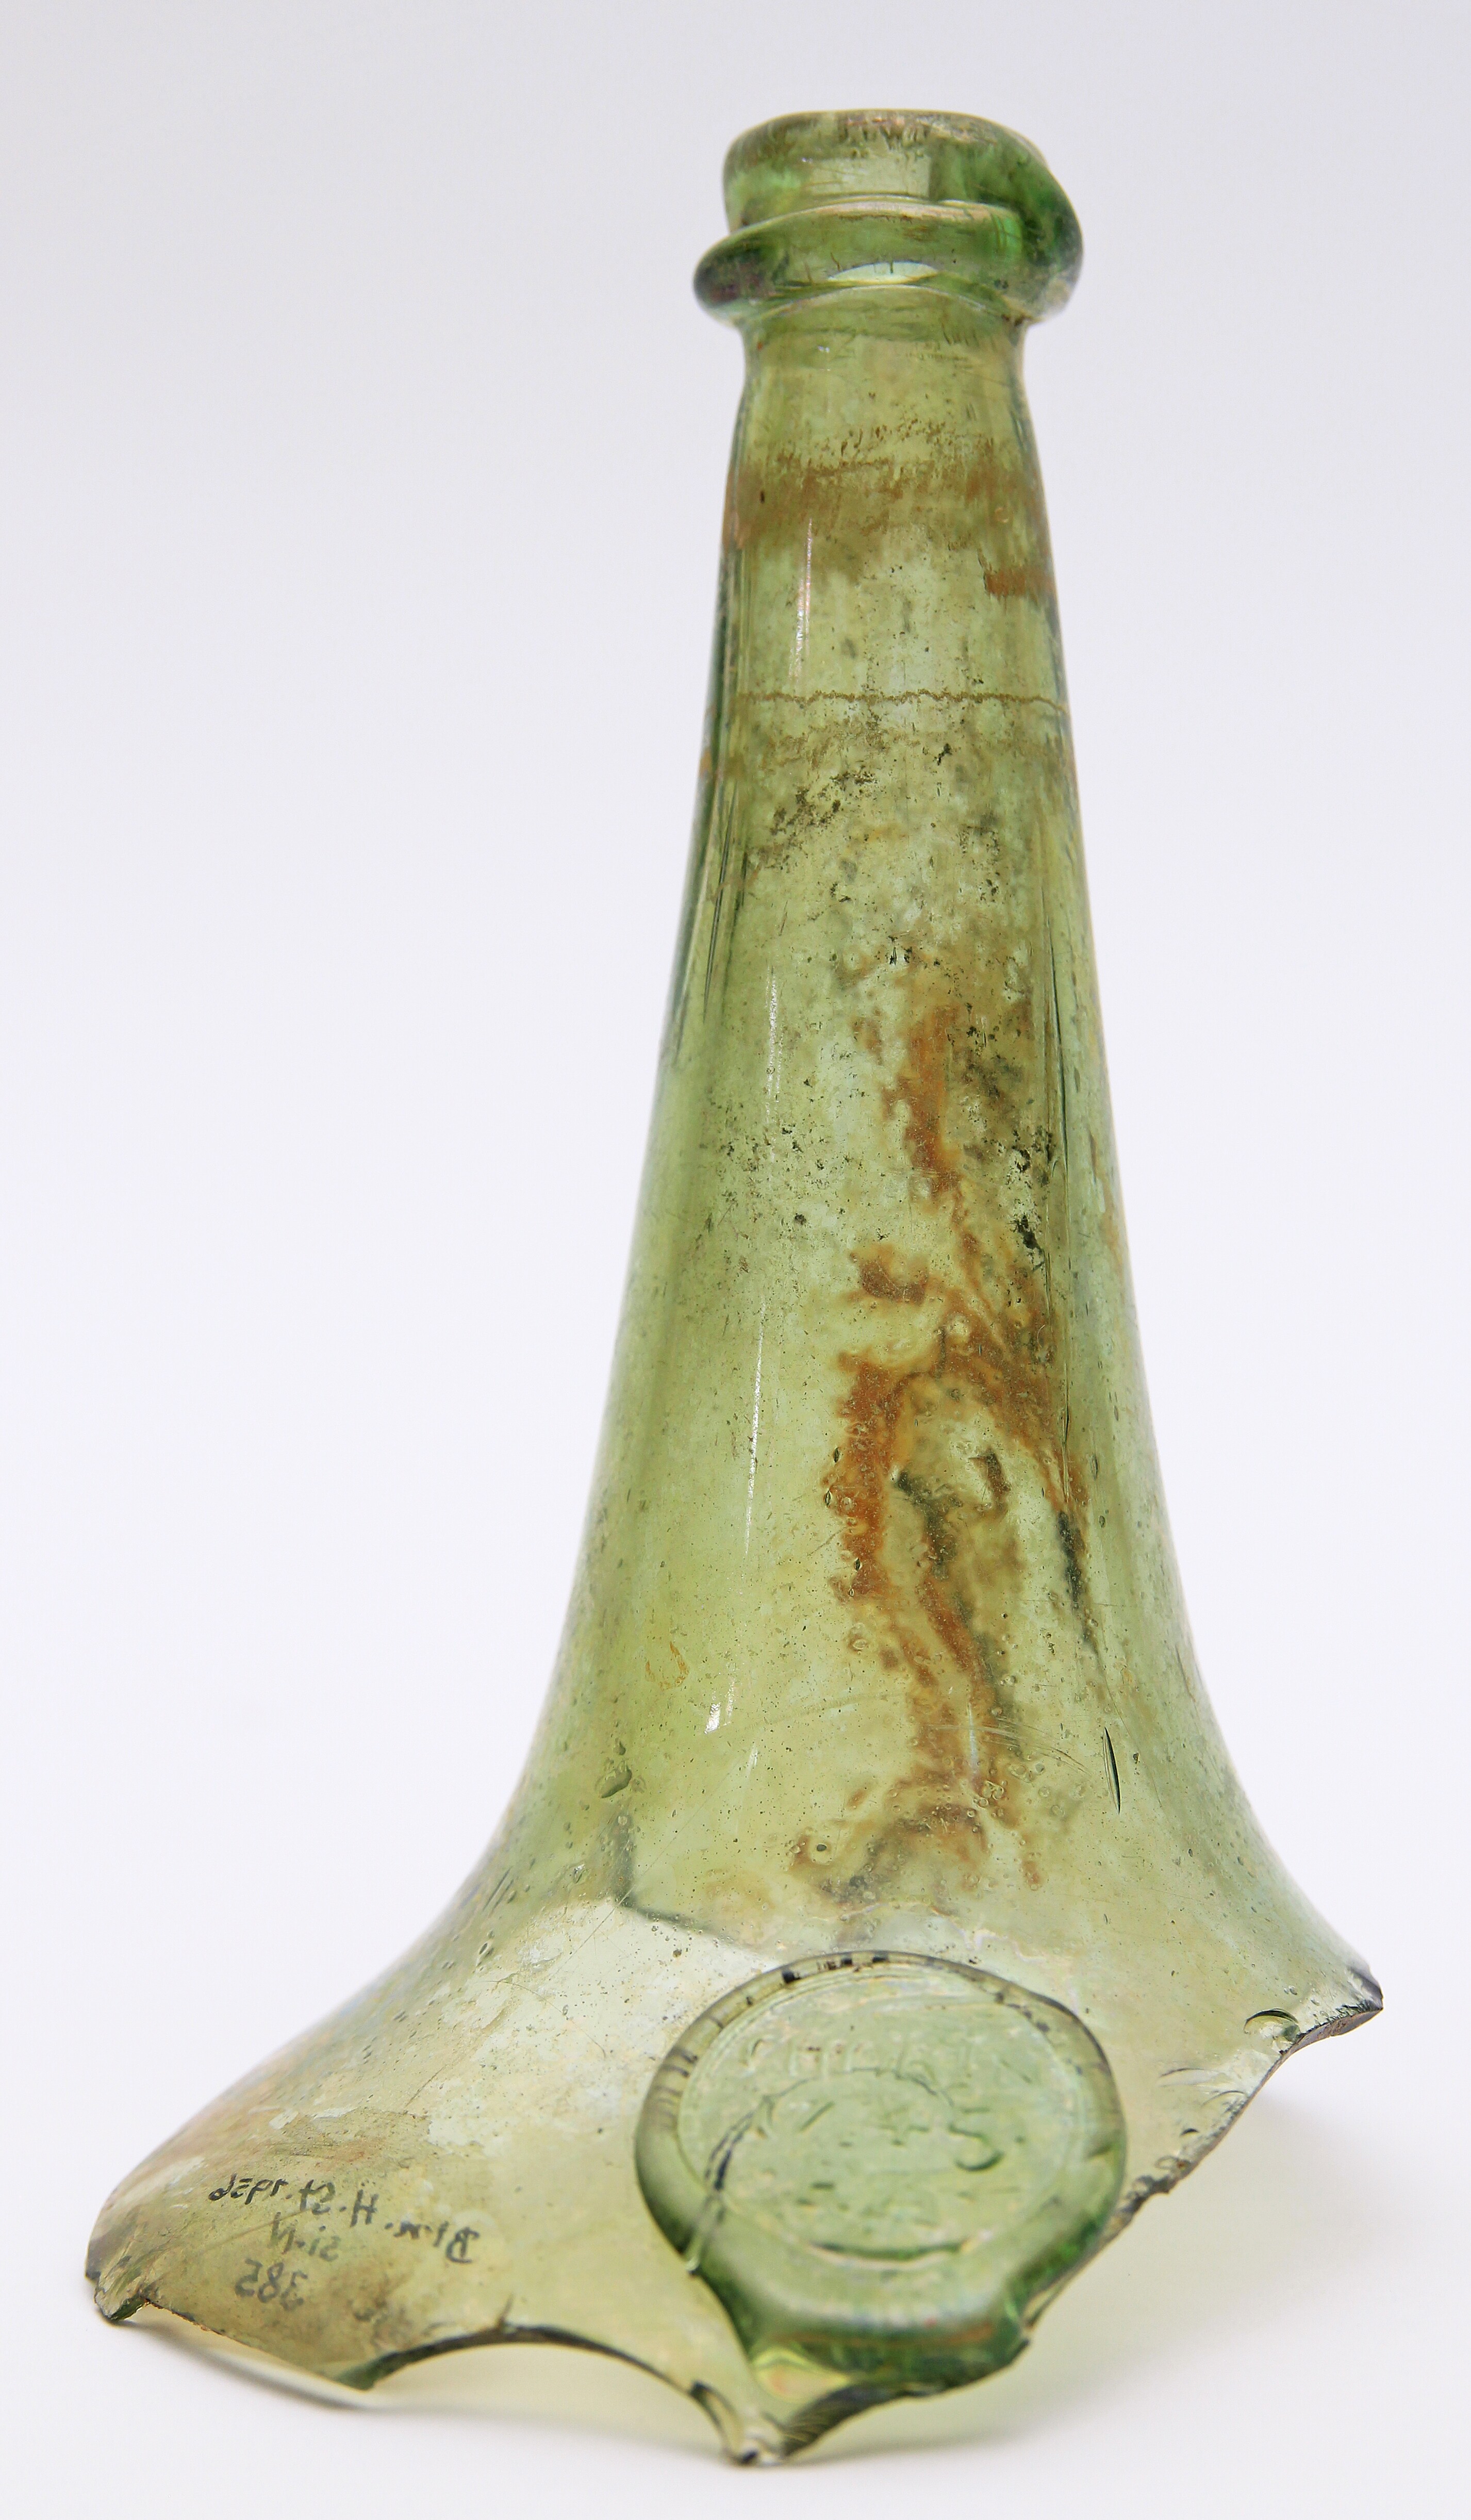 Flaschenhals mit Marke aus Chorin (Stiftung Stadtmuseum Berlin CC BY-NC-SA)